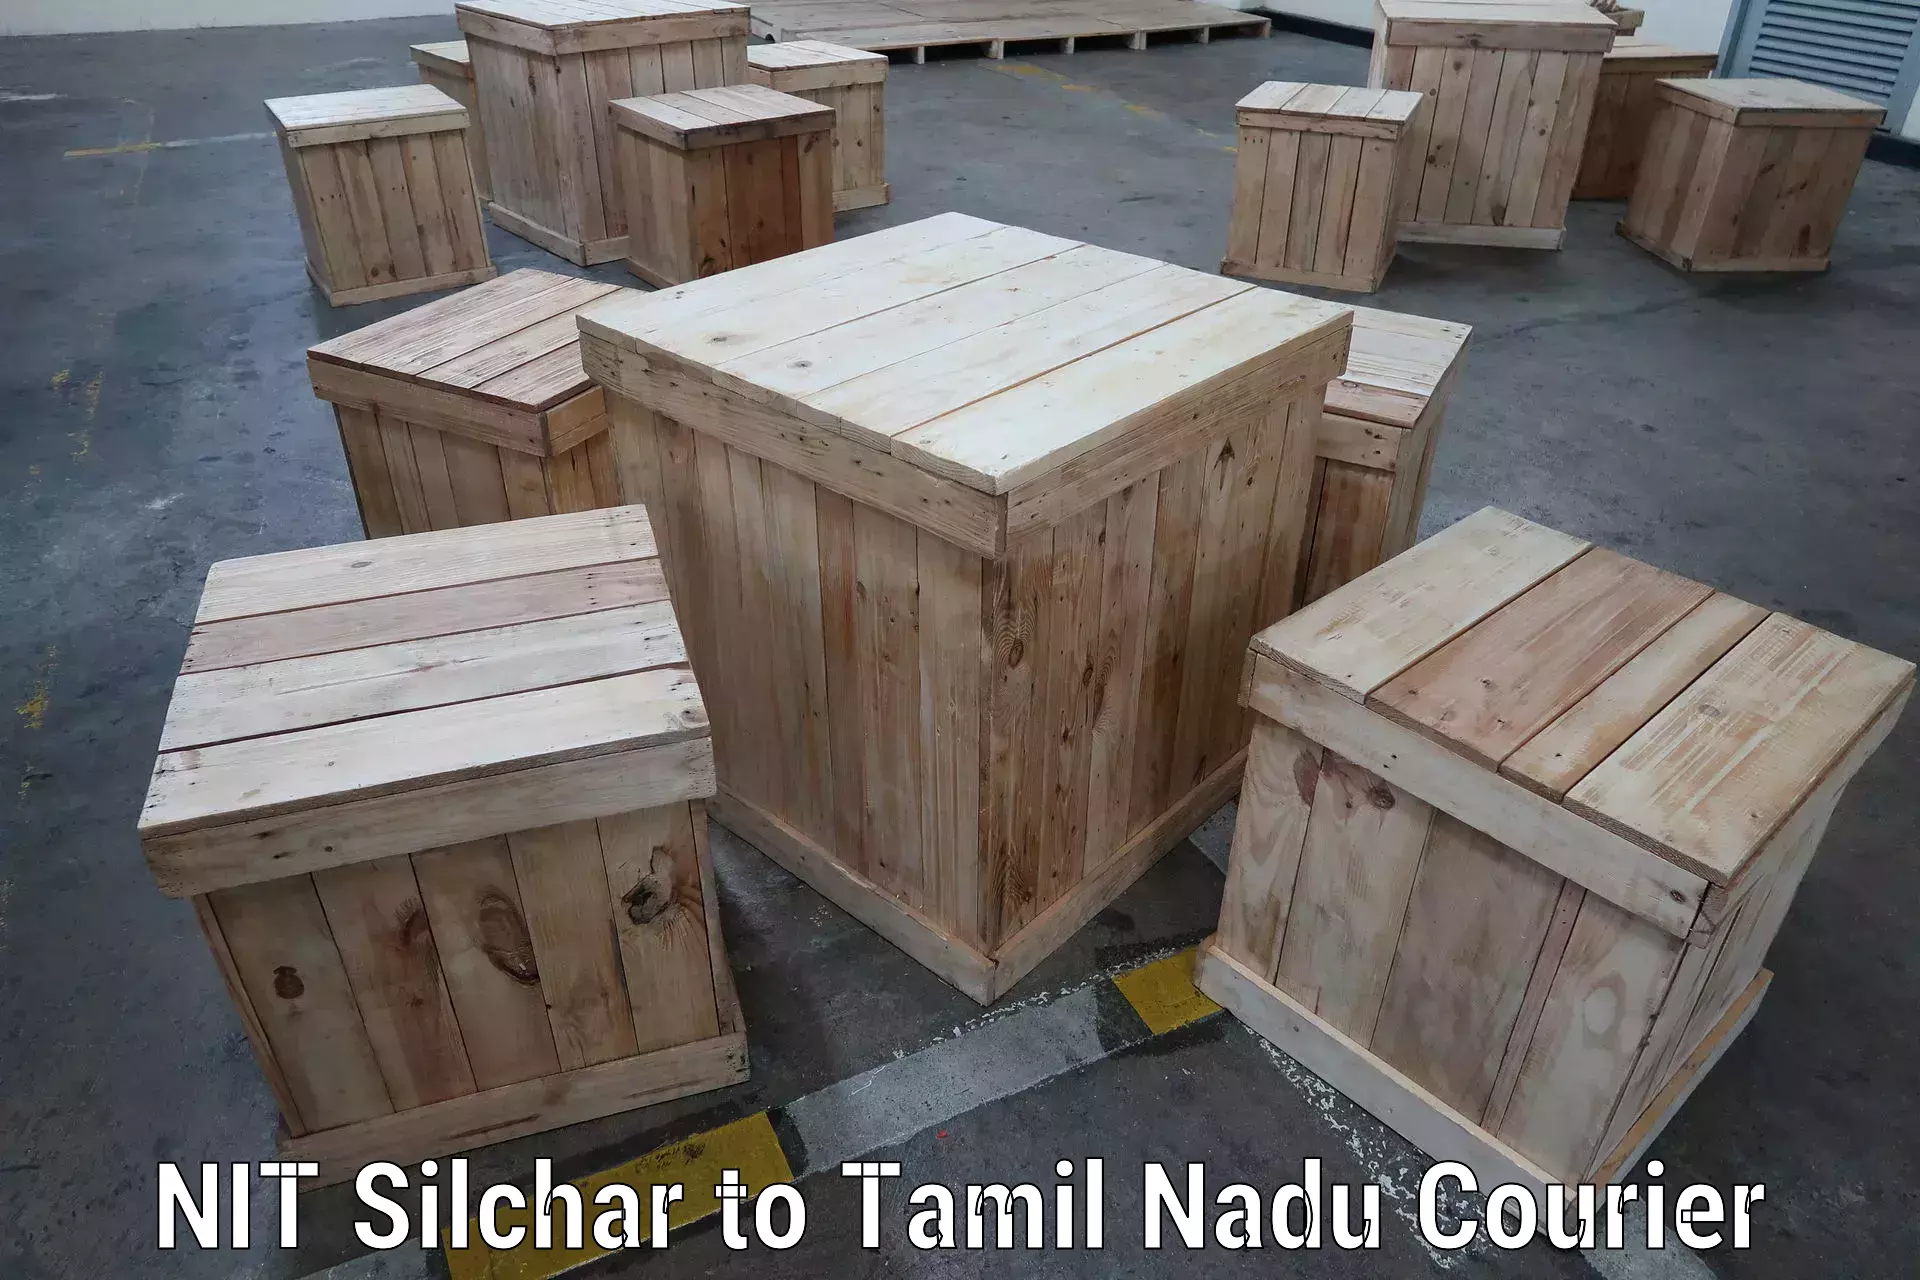 Express logistics NIT Silchar to Tamil Nadu